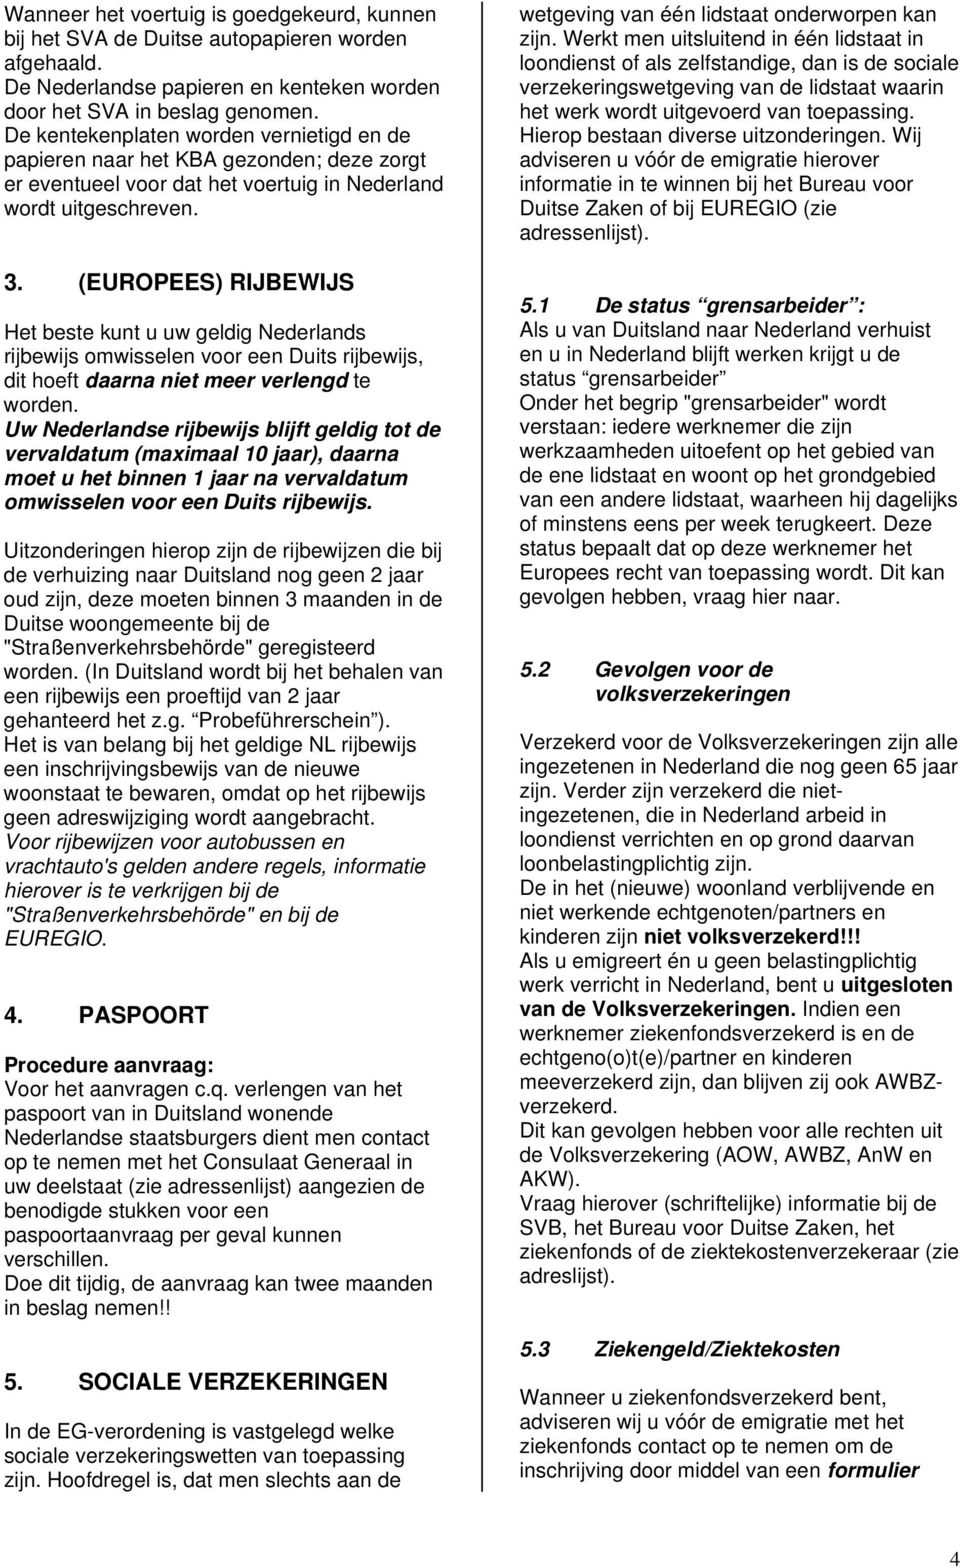 (EUROPEES) RIJBEWIJS Het beste kunt u uw geldig Nederlands rijbewijs omwisselen voor een Duits rijbewijs, dit hoeft daarna niet meer verlengd te worden.